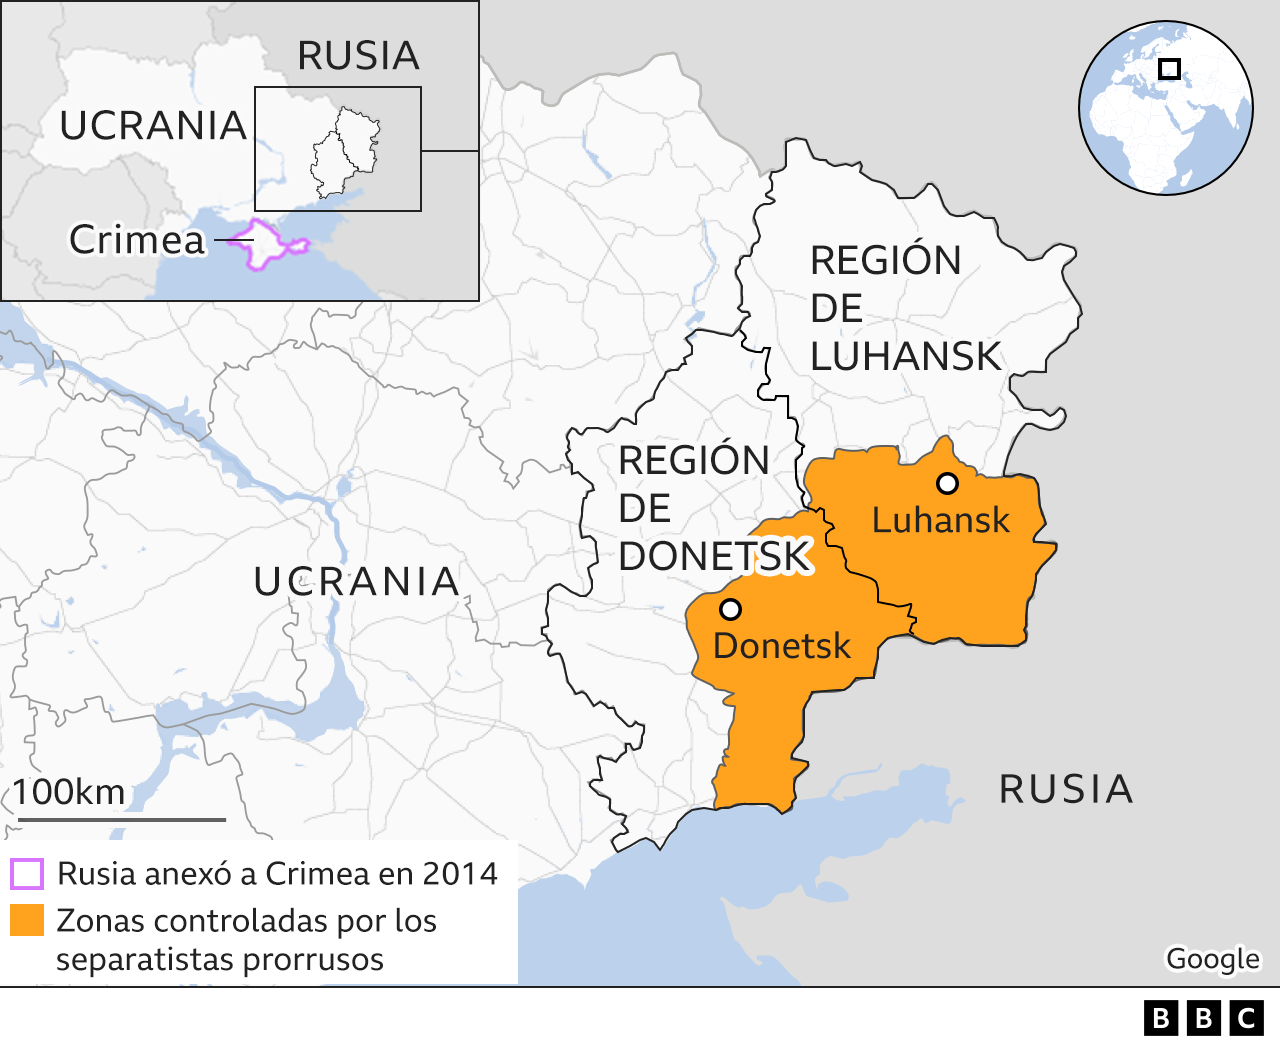 Mapa de las regiones de Luhansk y Donetsk